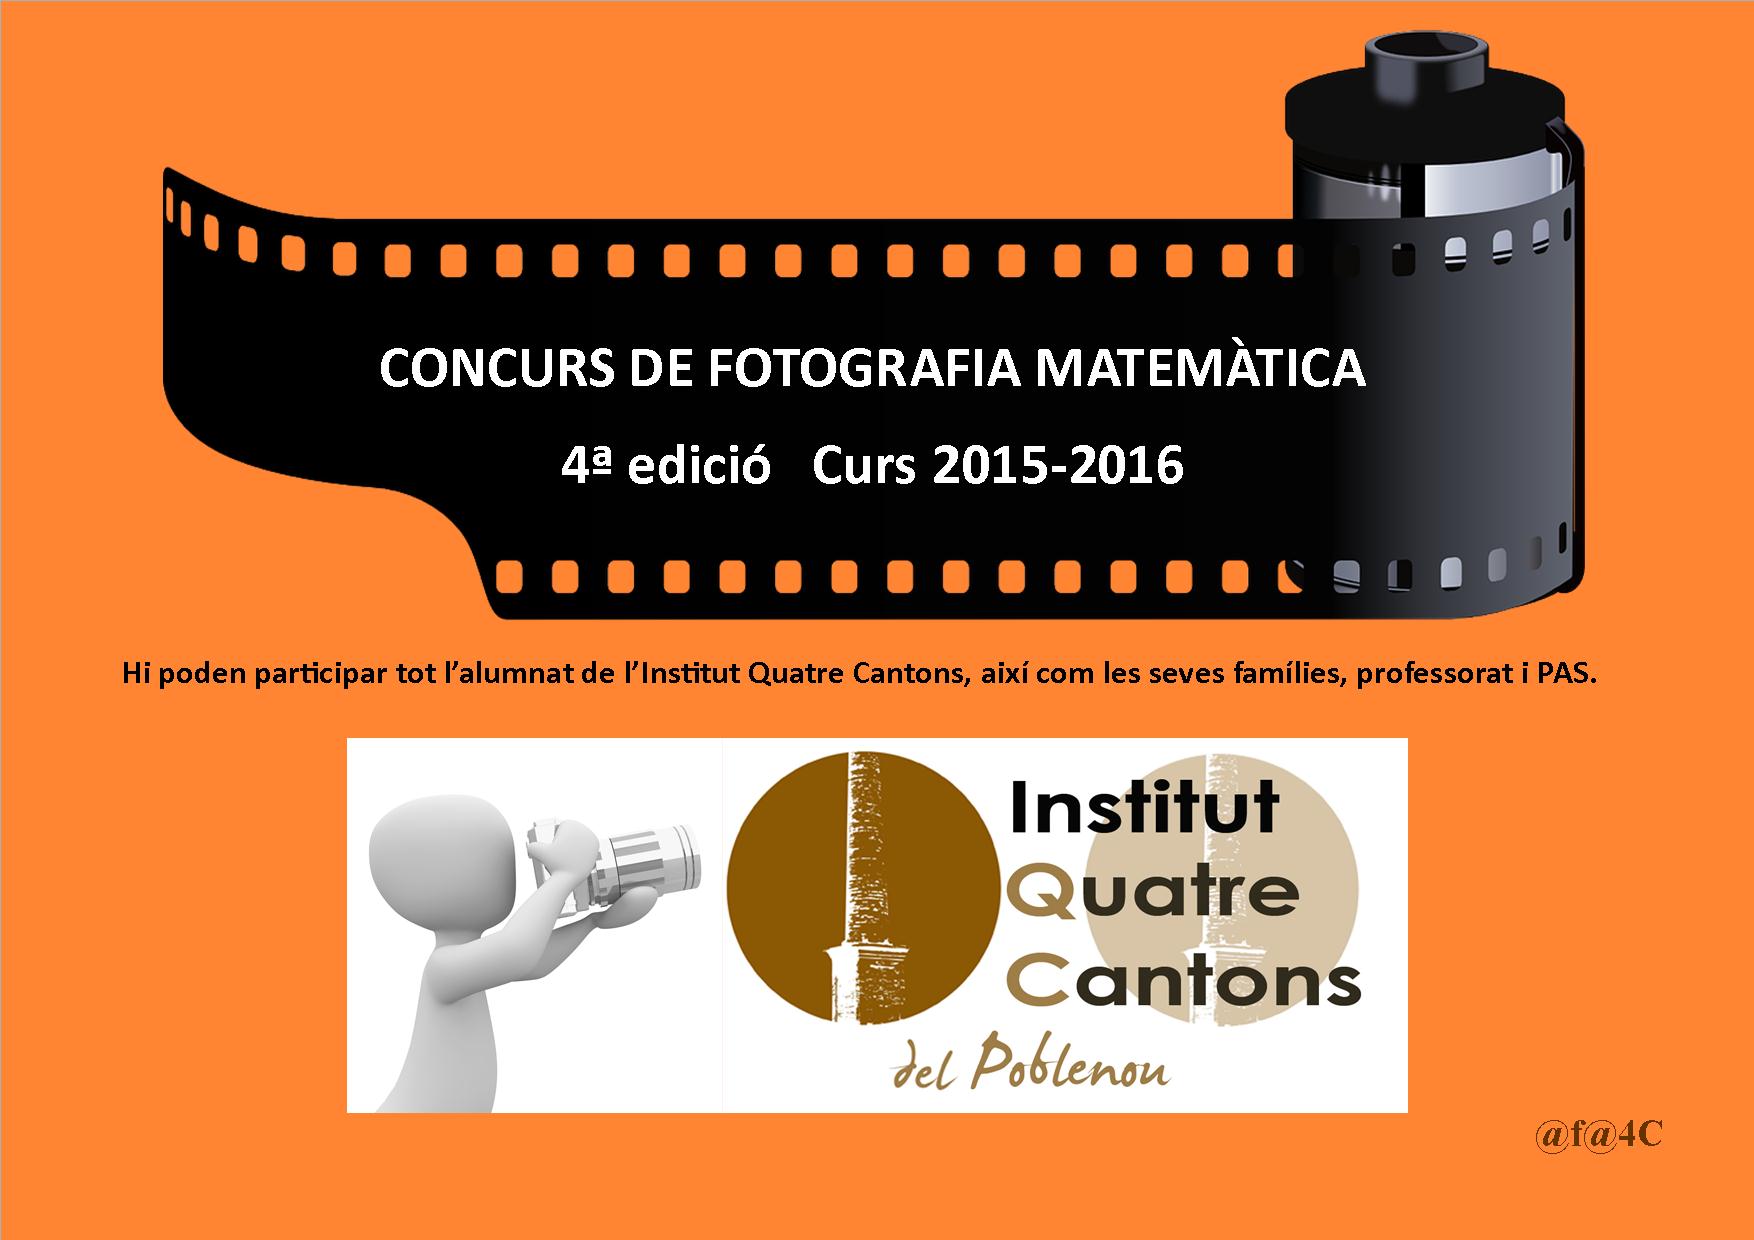 CONCURS DE FOTOGRAFIA MATEMÀTICA 4a edició. Organitza Institut Quatre Cantons